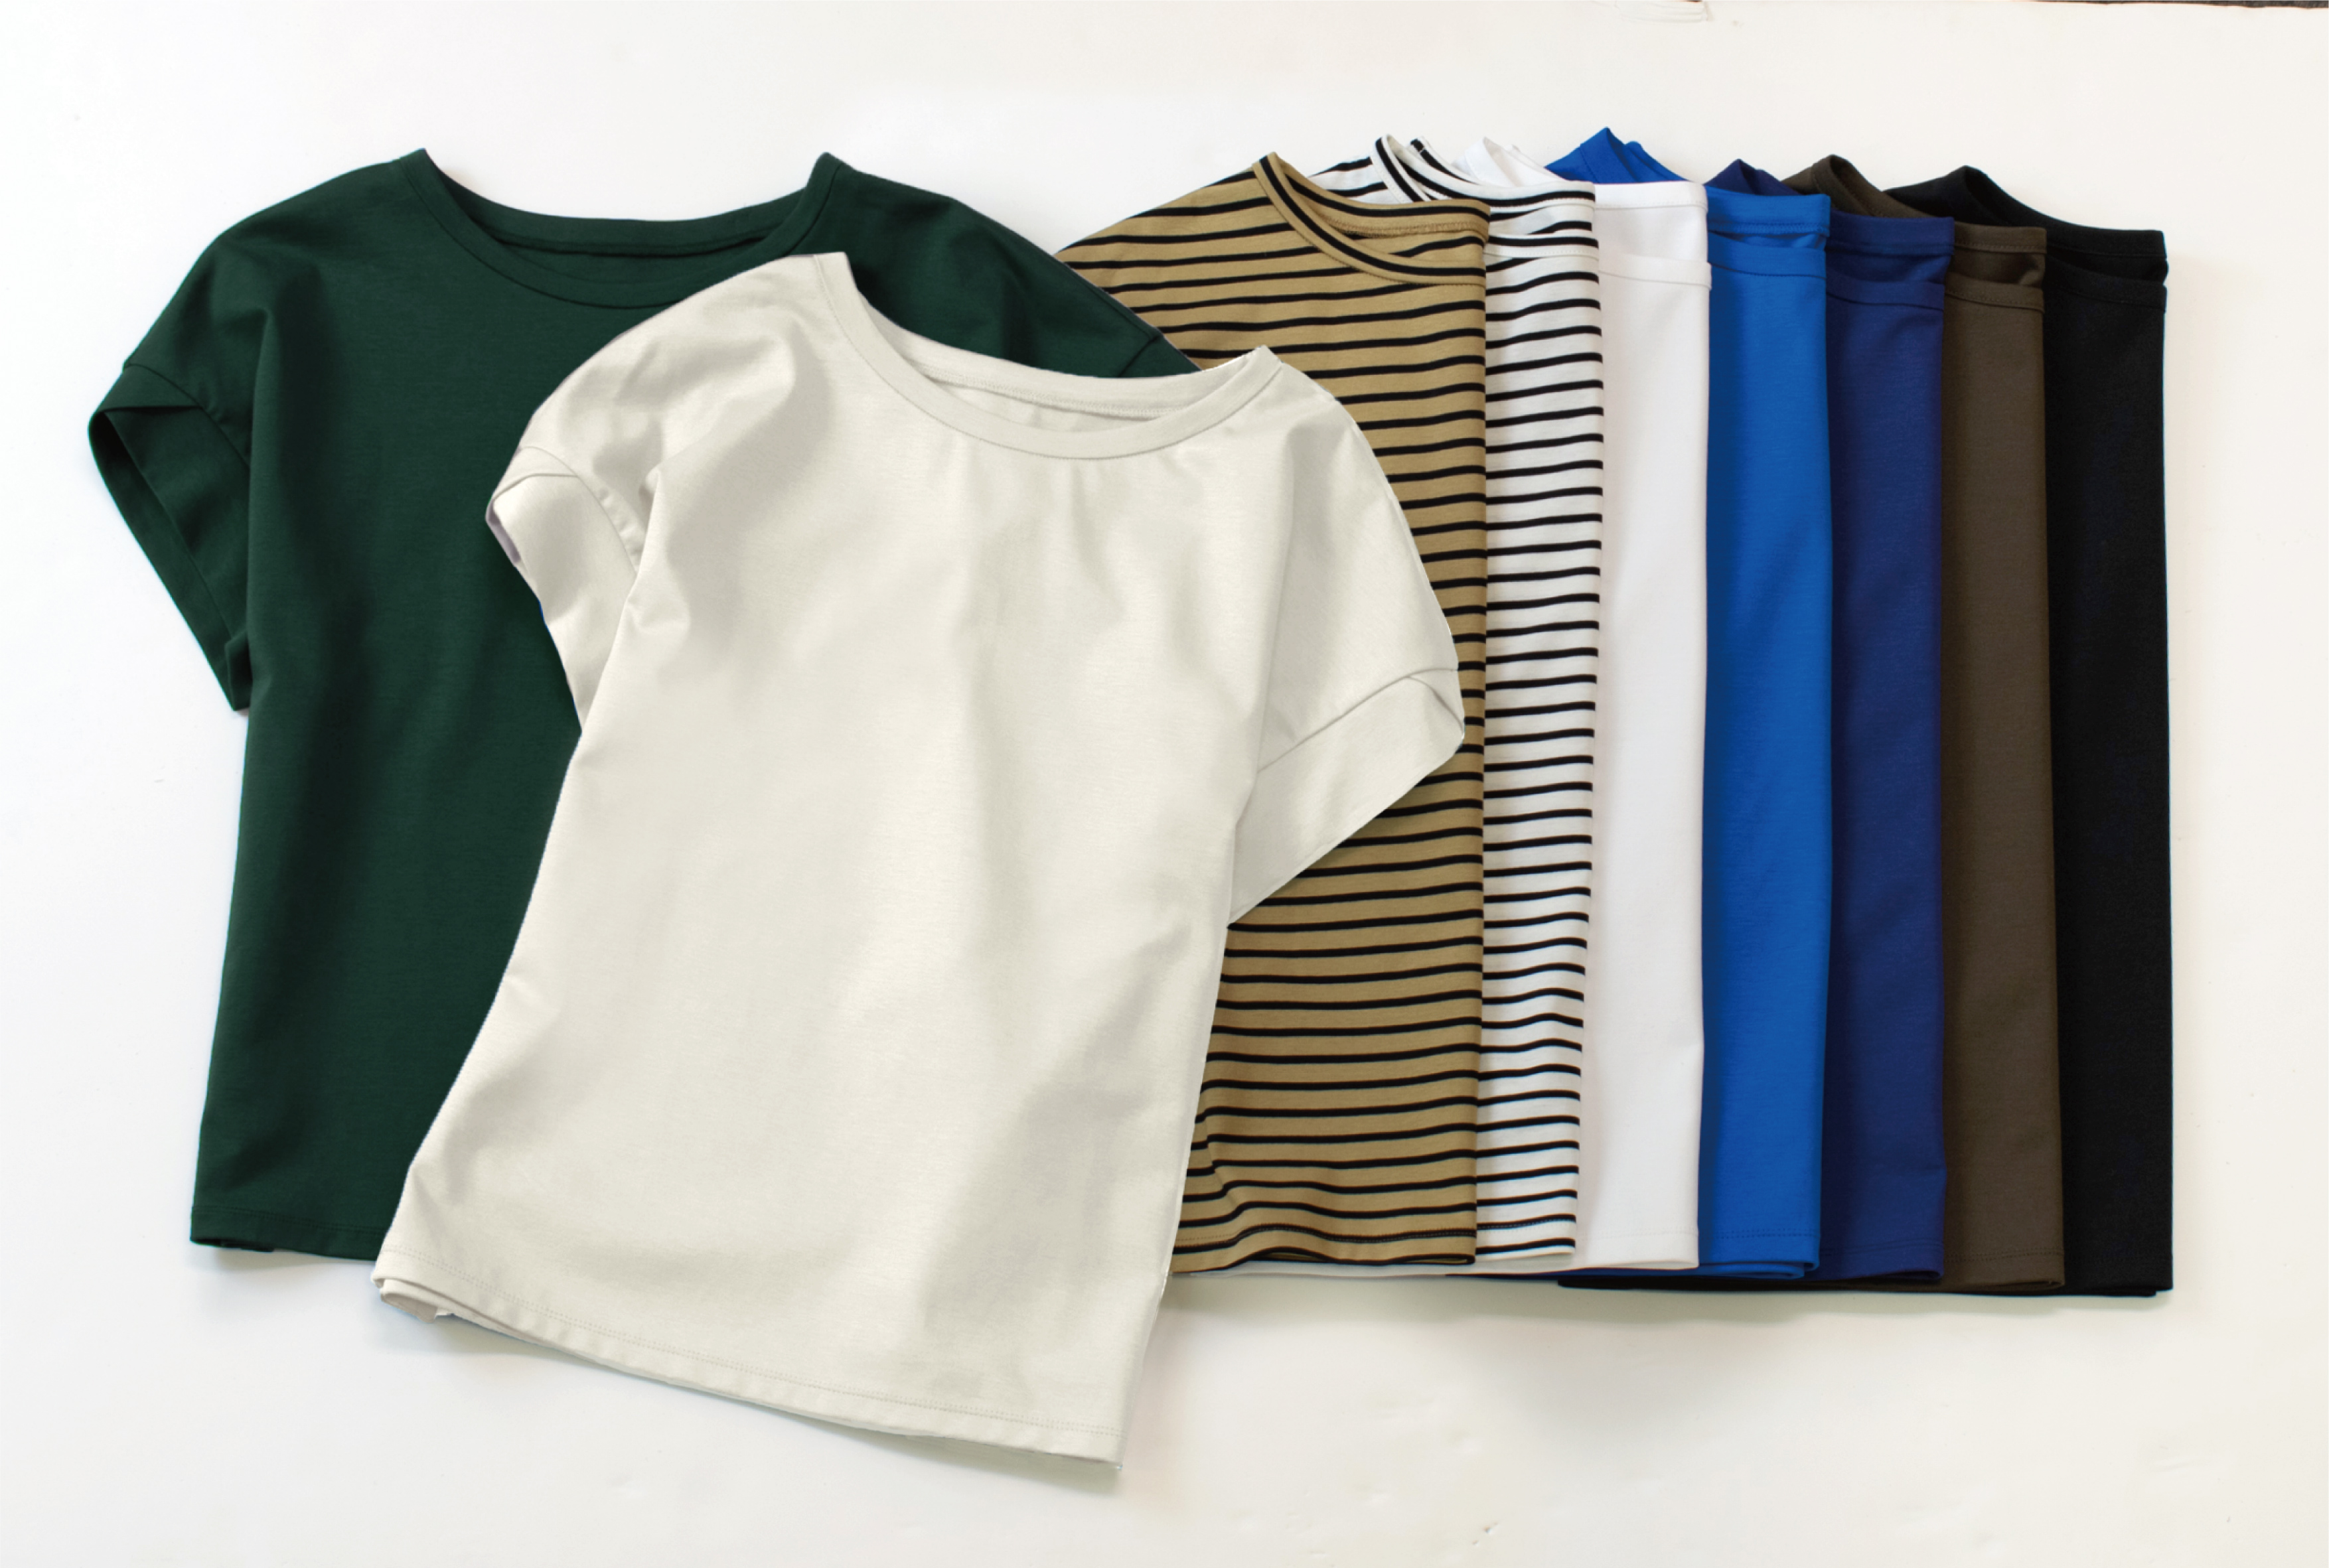 進化し続けリピーター続出！ルミノーゾ・コムサのTシャツがロングセラーにつき新色を追加して発売｜株式会社ファイブフォックスのプレスリリース